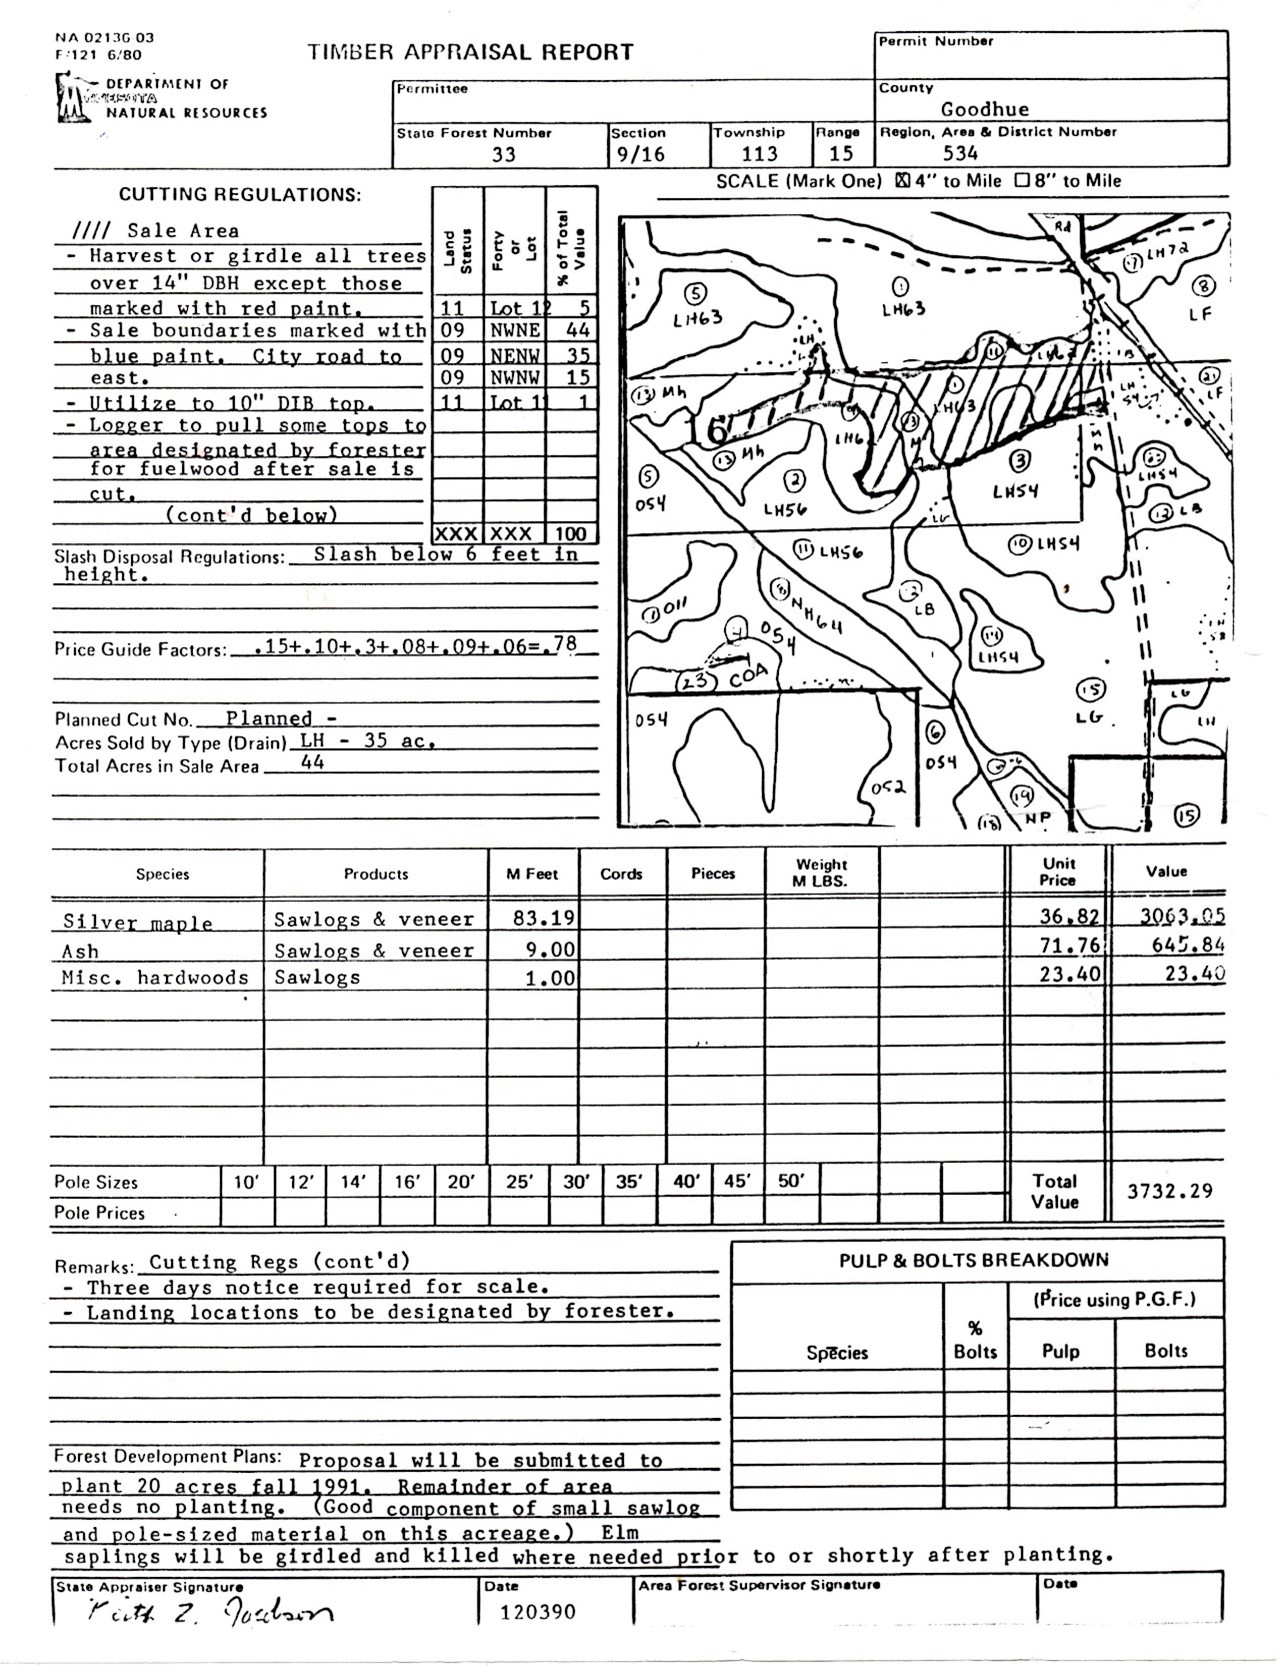 Figure 7: 1990 timber sale appraisal.